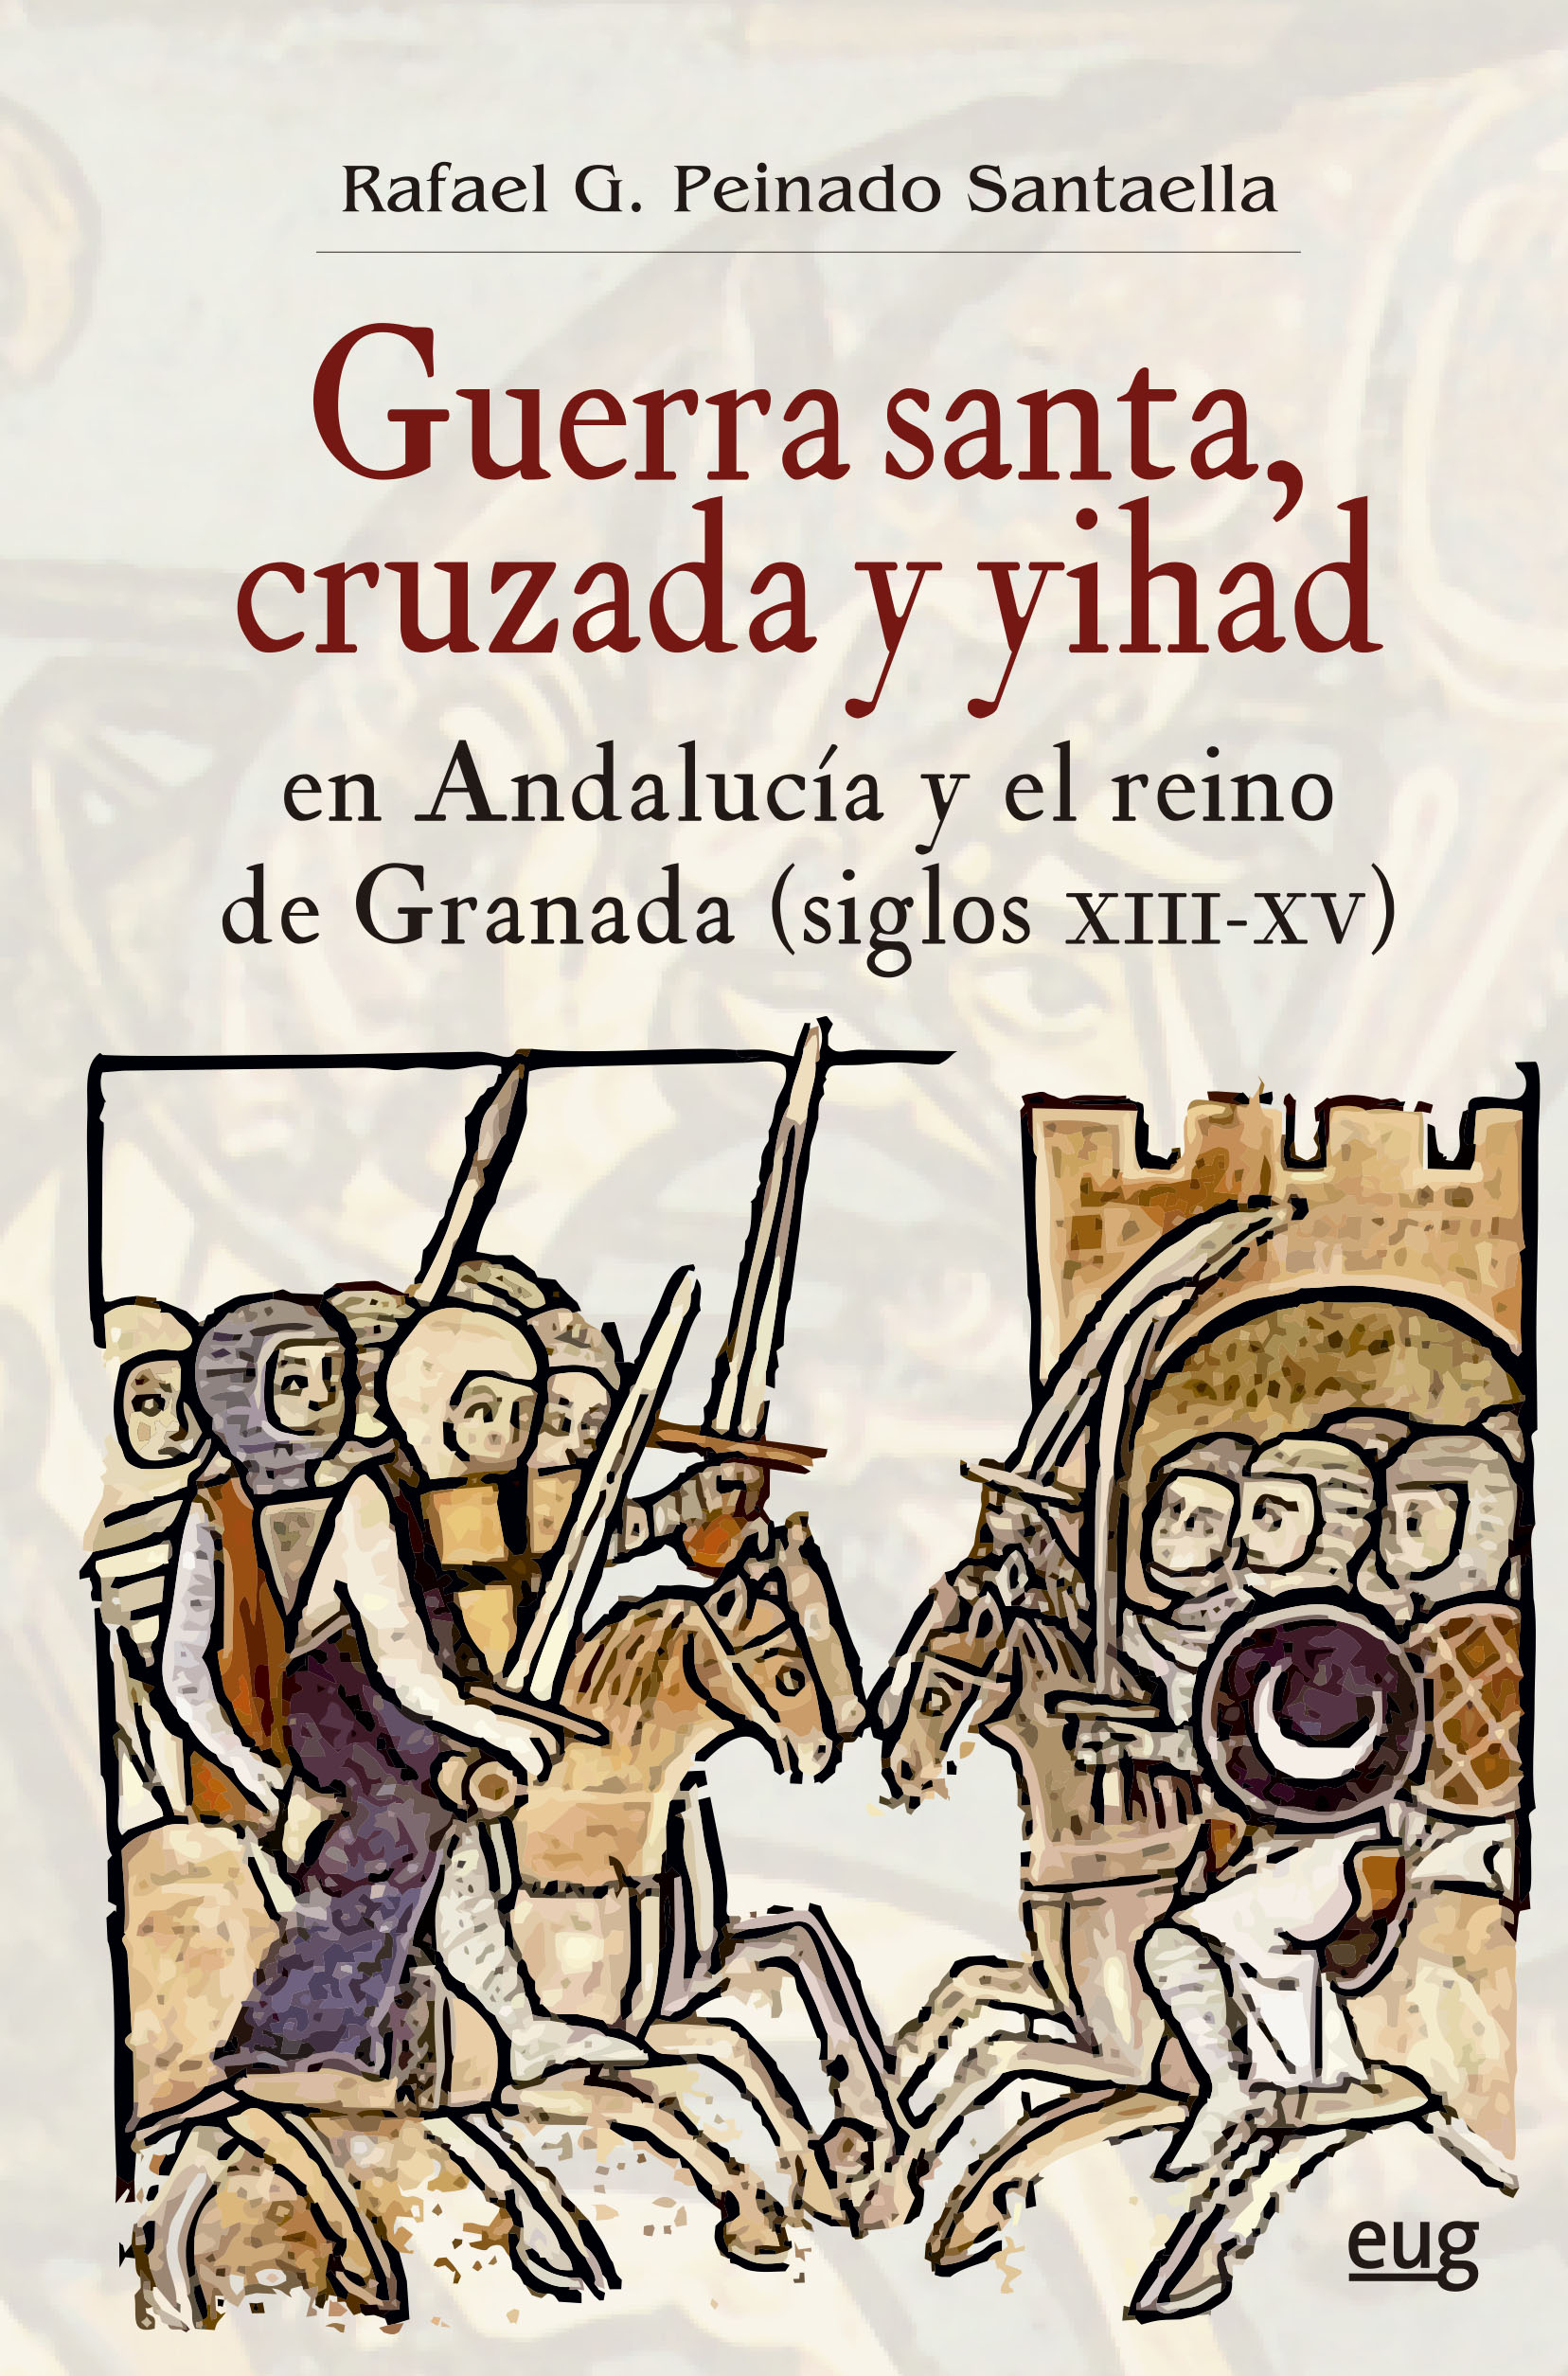 Portada del libro "‘Guerra santa, cruzada y yihad en Andalucía y el reino de Granada"